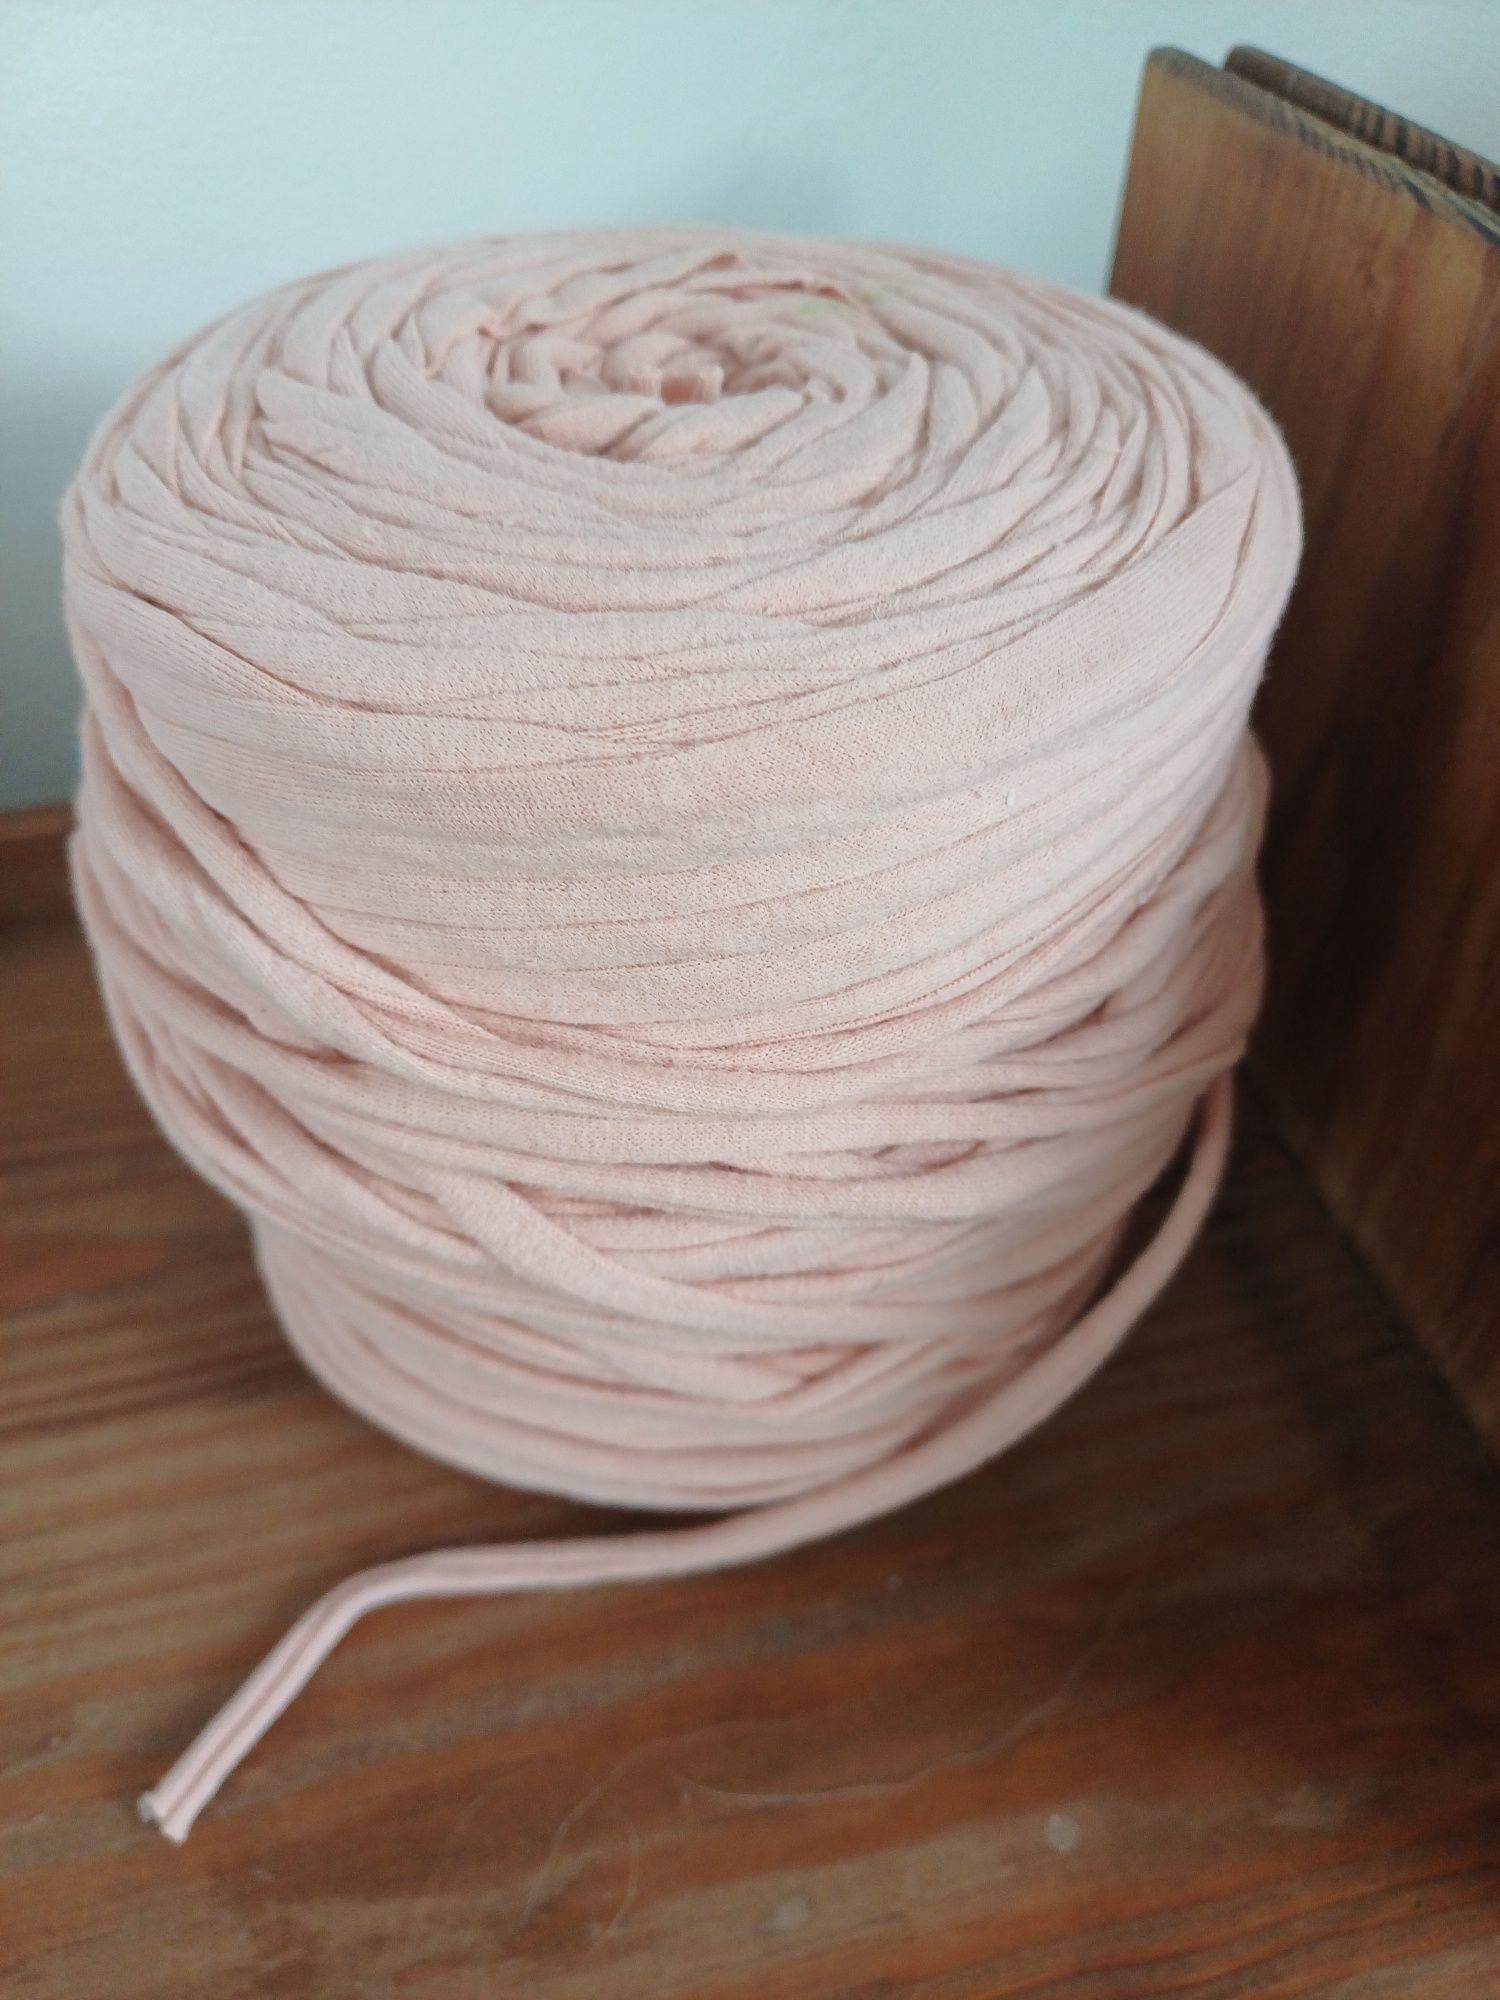 Motek bawełniany szeroką przędza t-shirt yarn róż natural spaghetti